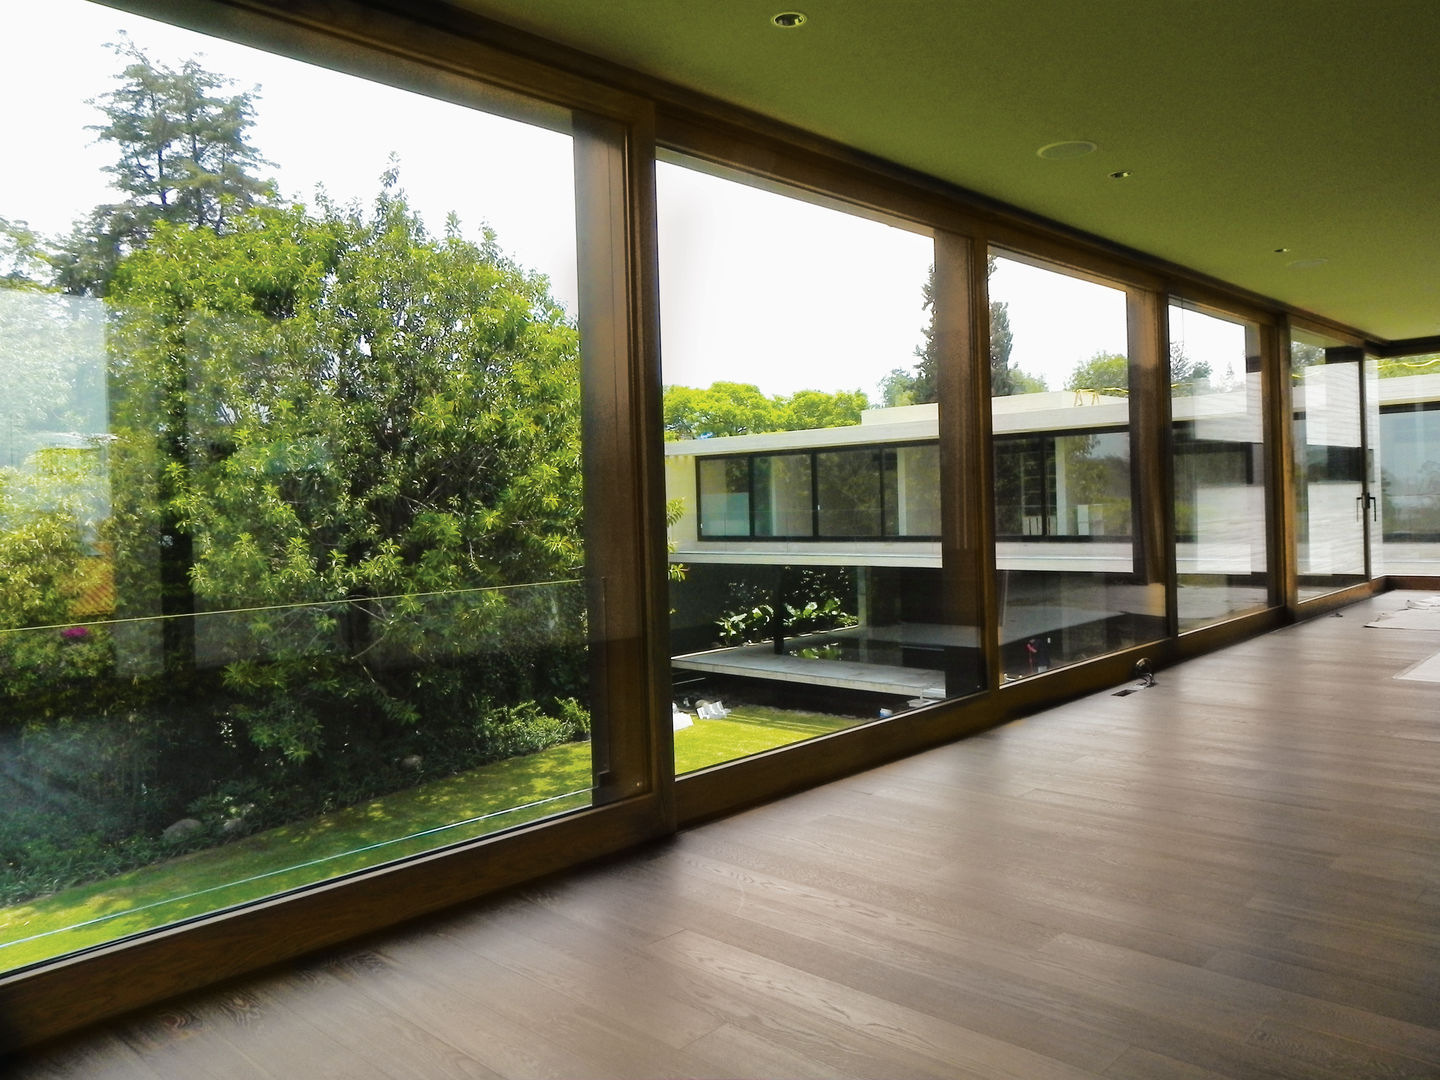 Diseños Elevables, Multivi Multivi Puertas y ventanas de estilo moderno